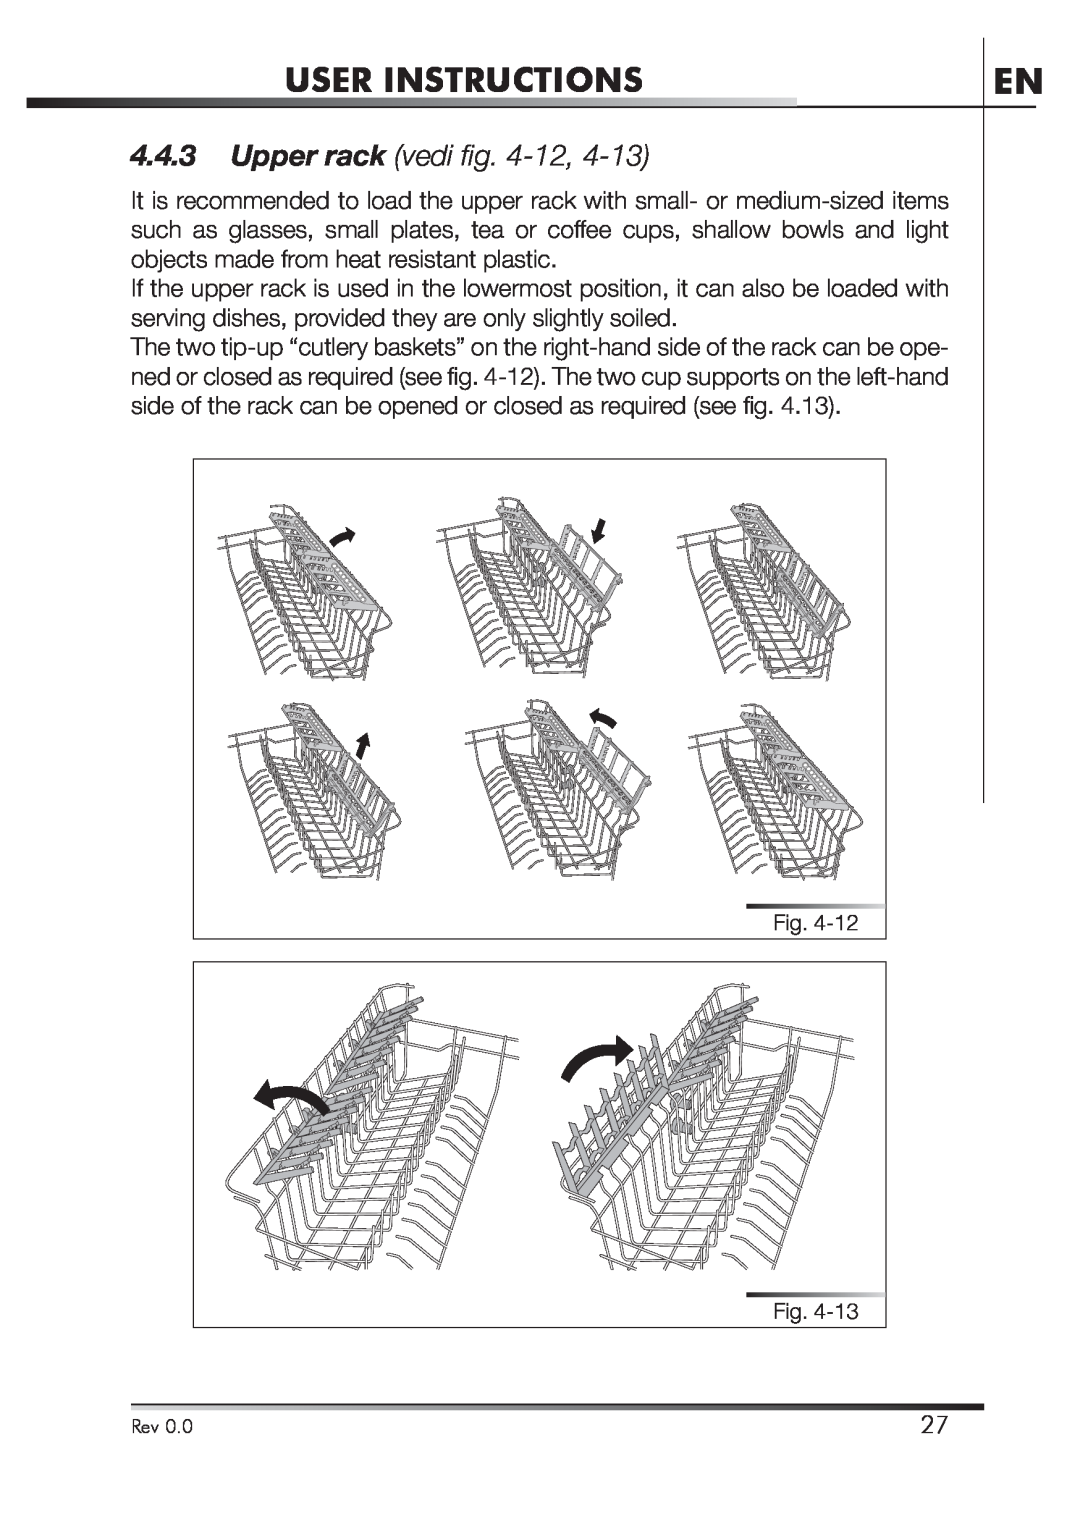 Smeg STA4645 instruction manual User Instructions, Upper rack vedi ﬁ g. 4-12 